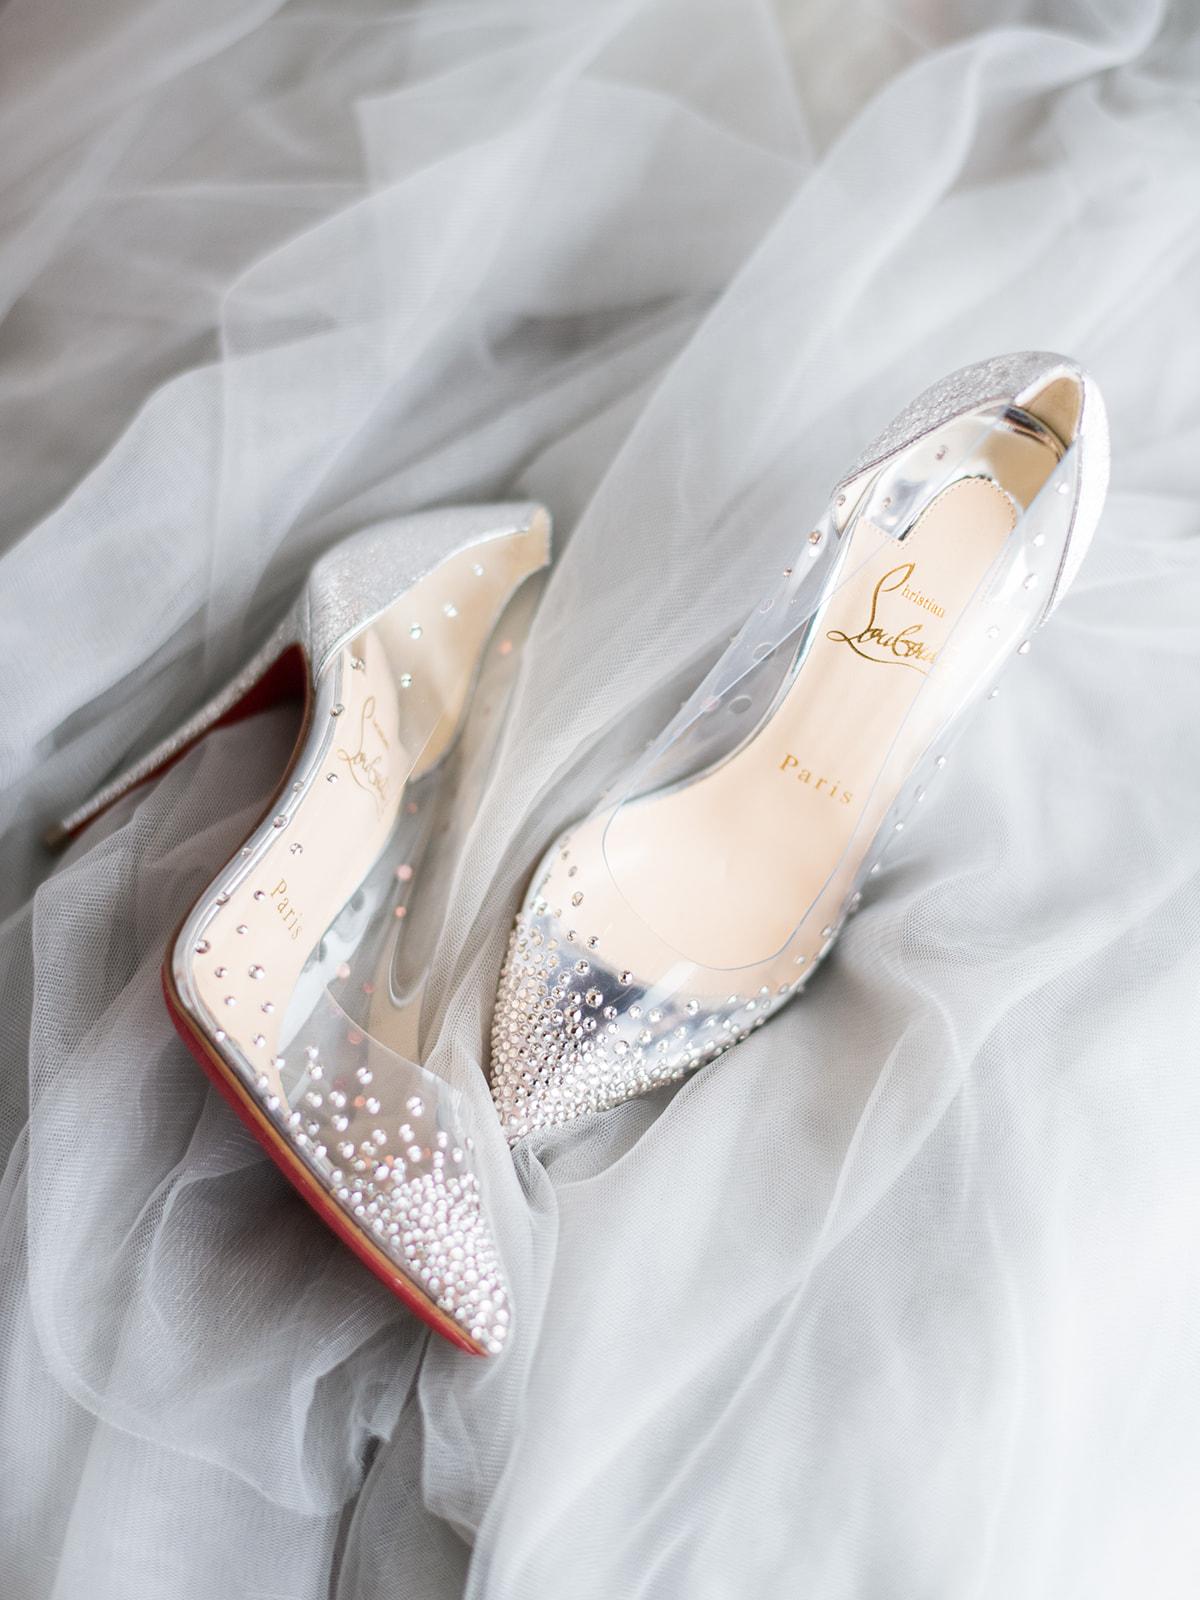 vuitton wedding heels